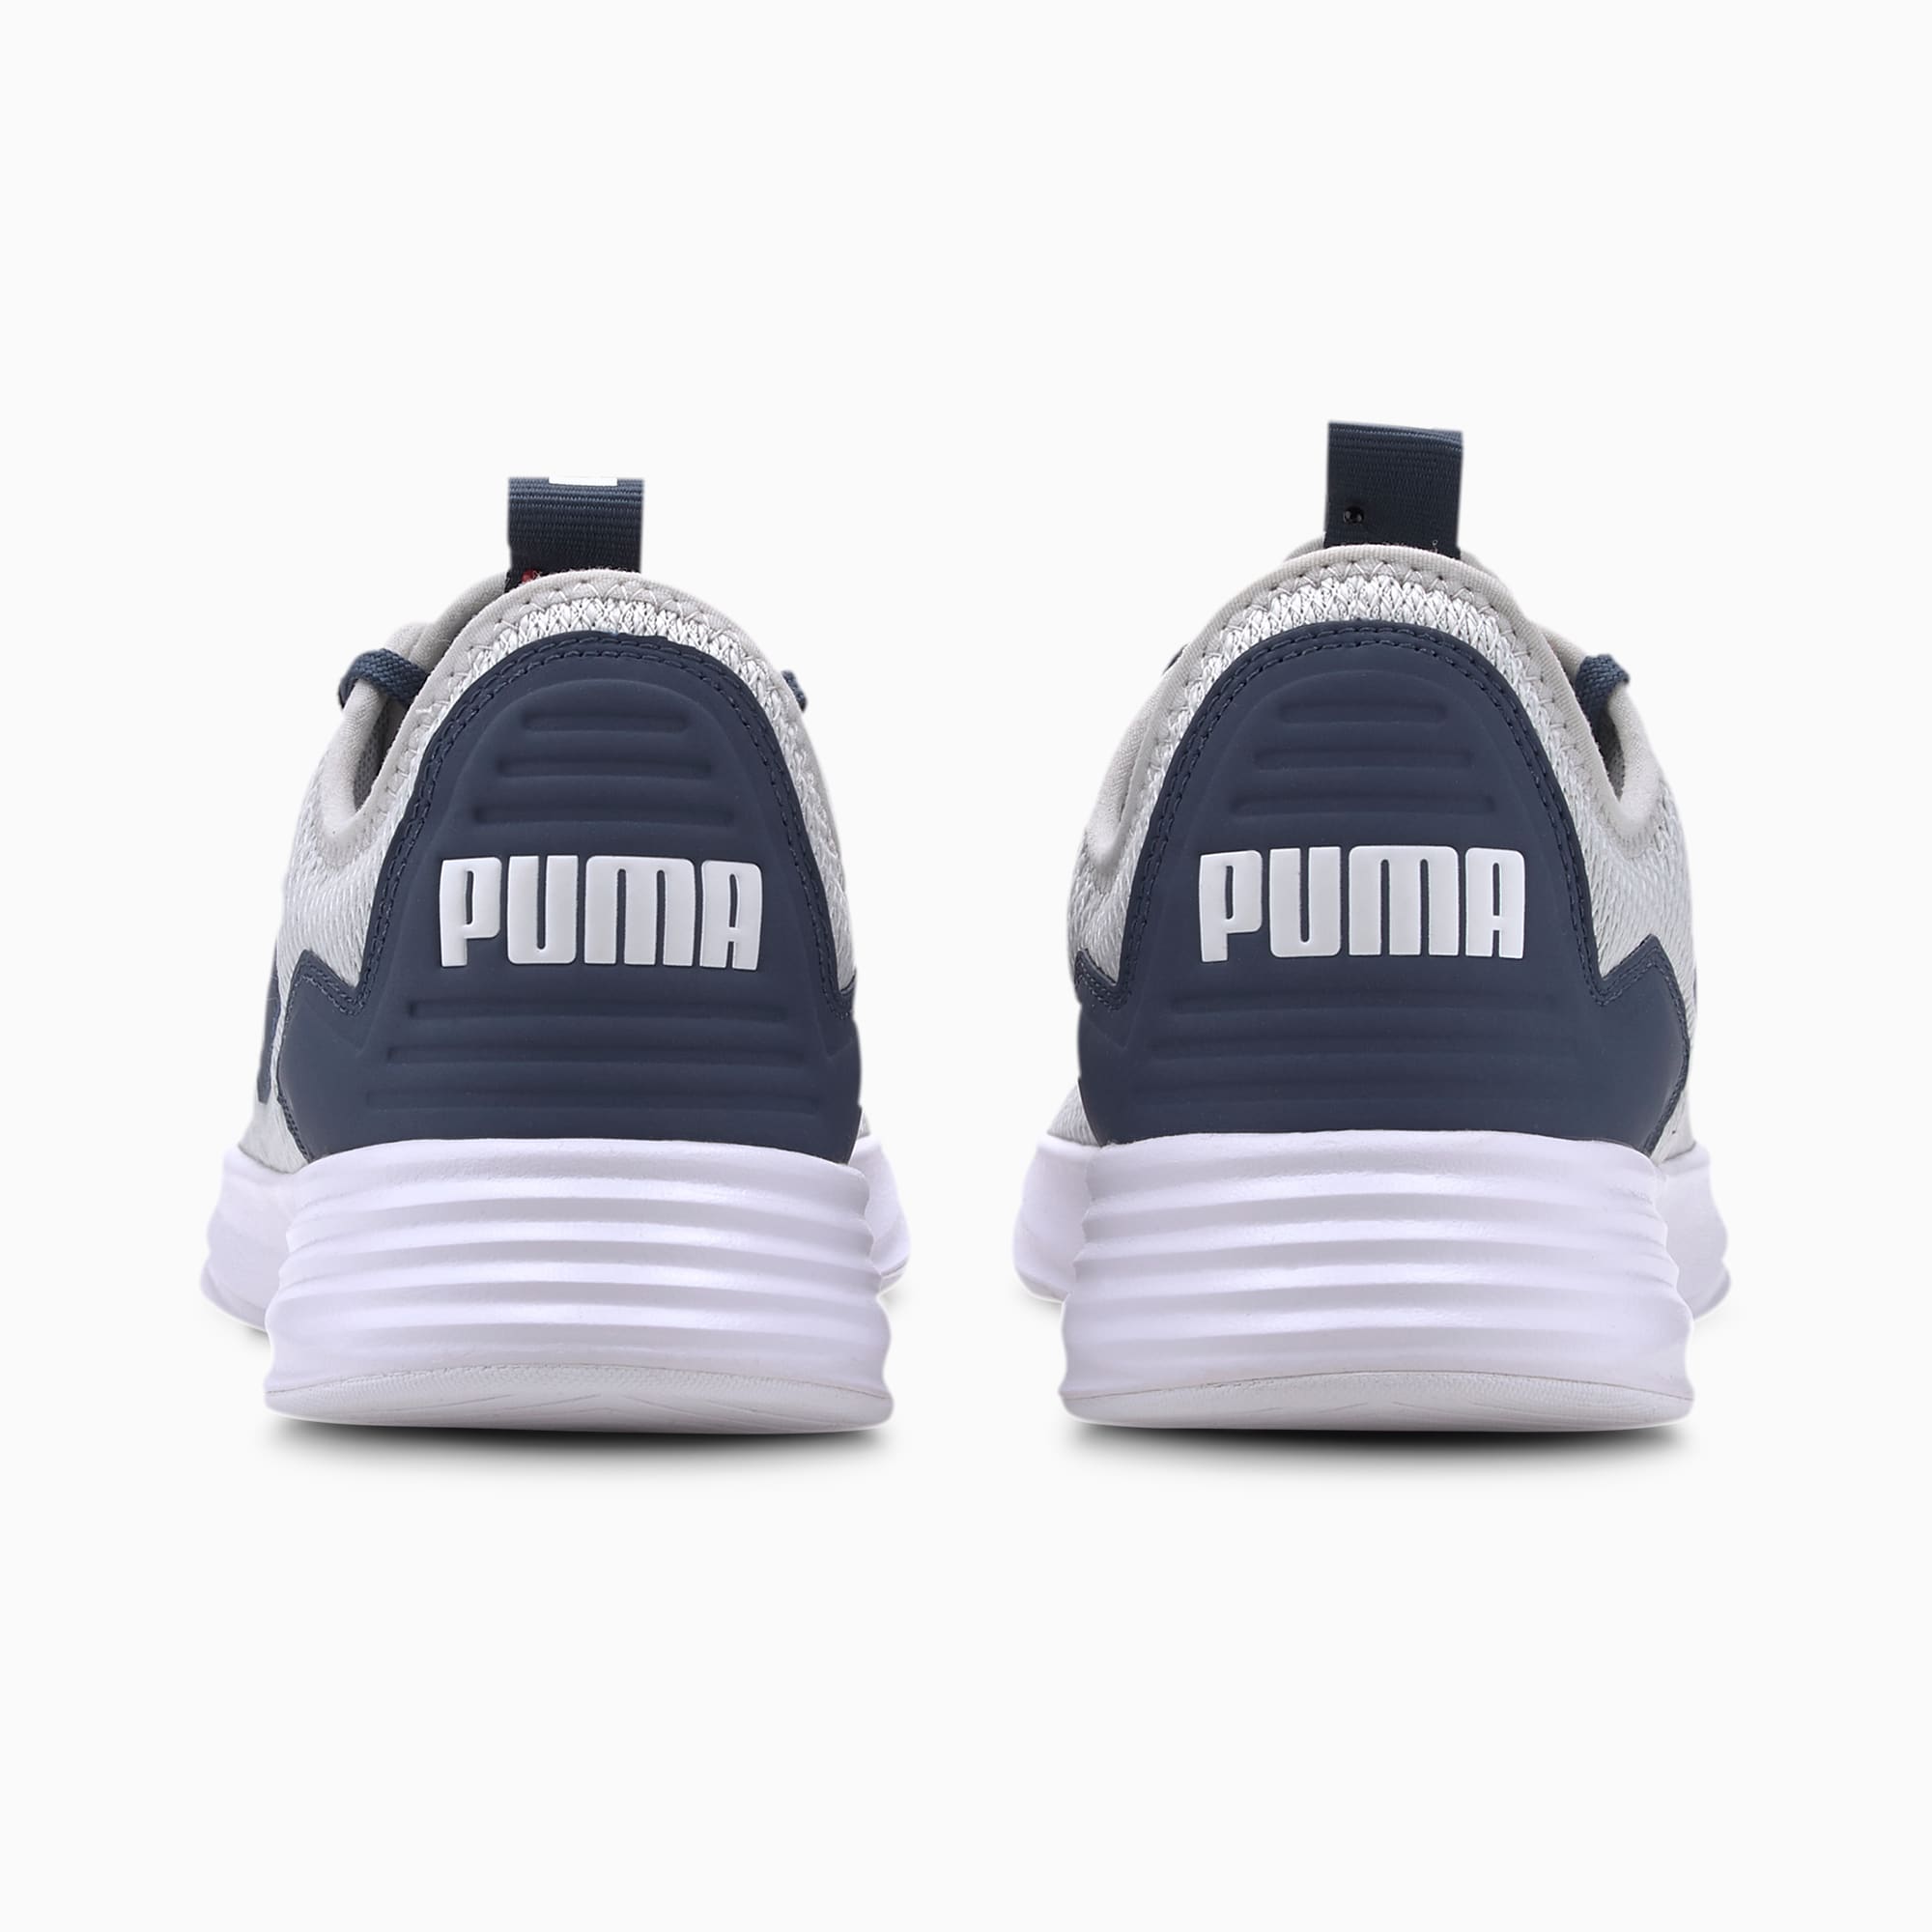 puma soft foam running shoes